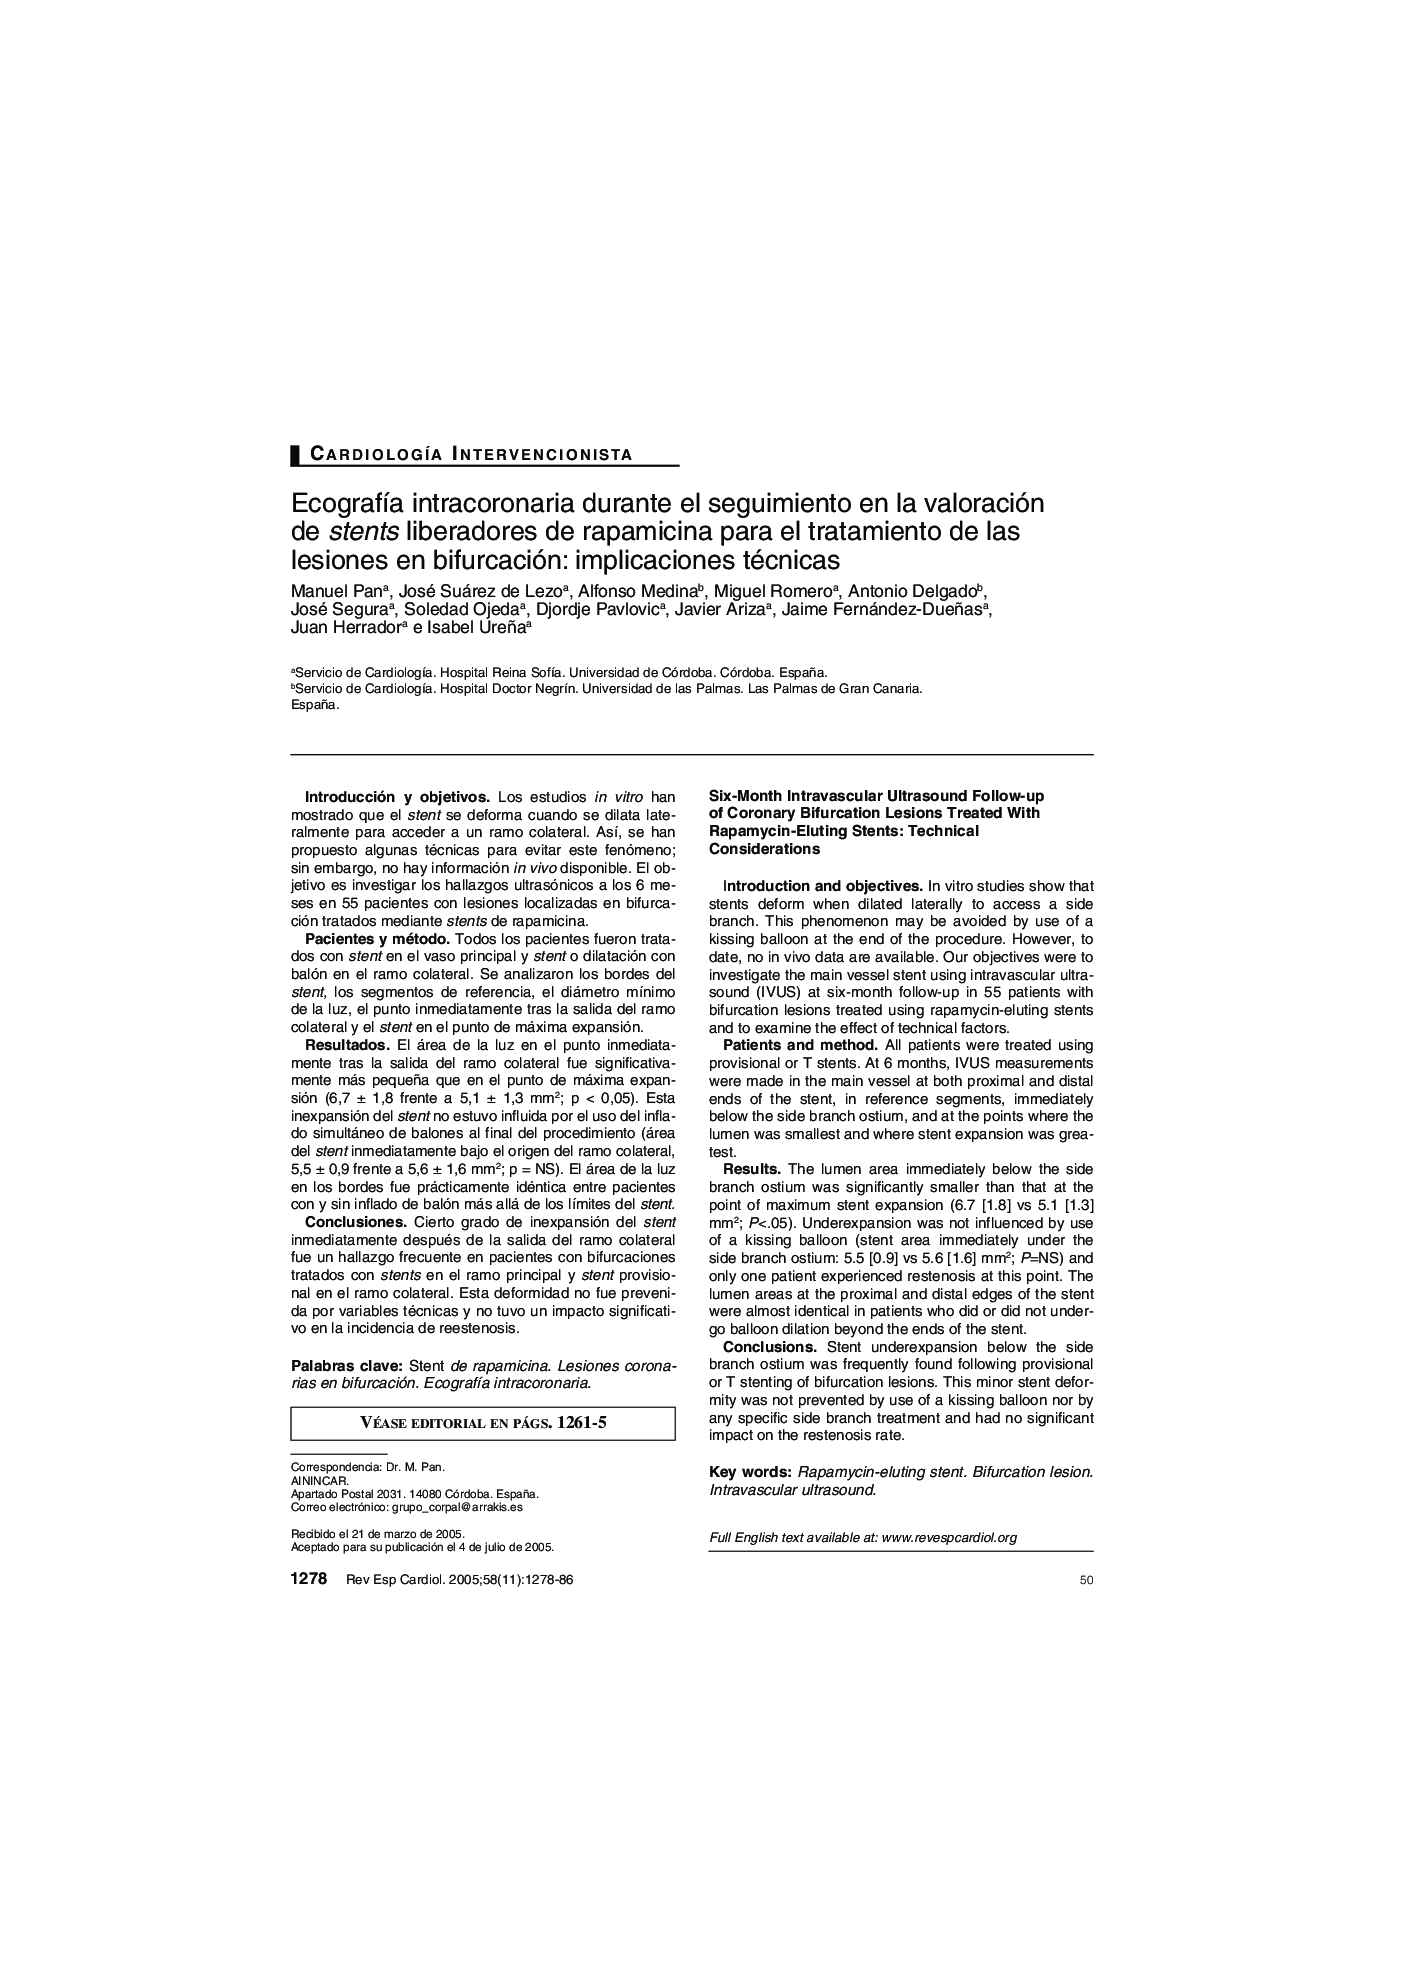 EcografÃ­a intracoronaria durante el seguimiento en la valoración de stents liberadores de rapamicina para el tratamiento de las lesiones en bifurcación: implicaciones técnicas